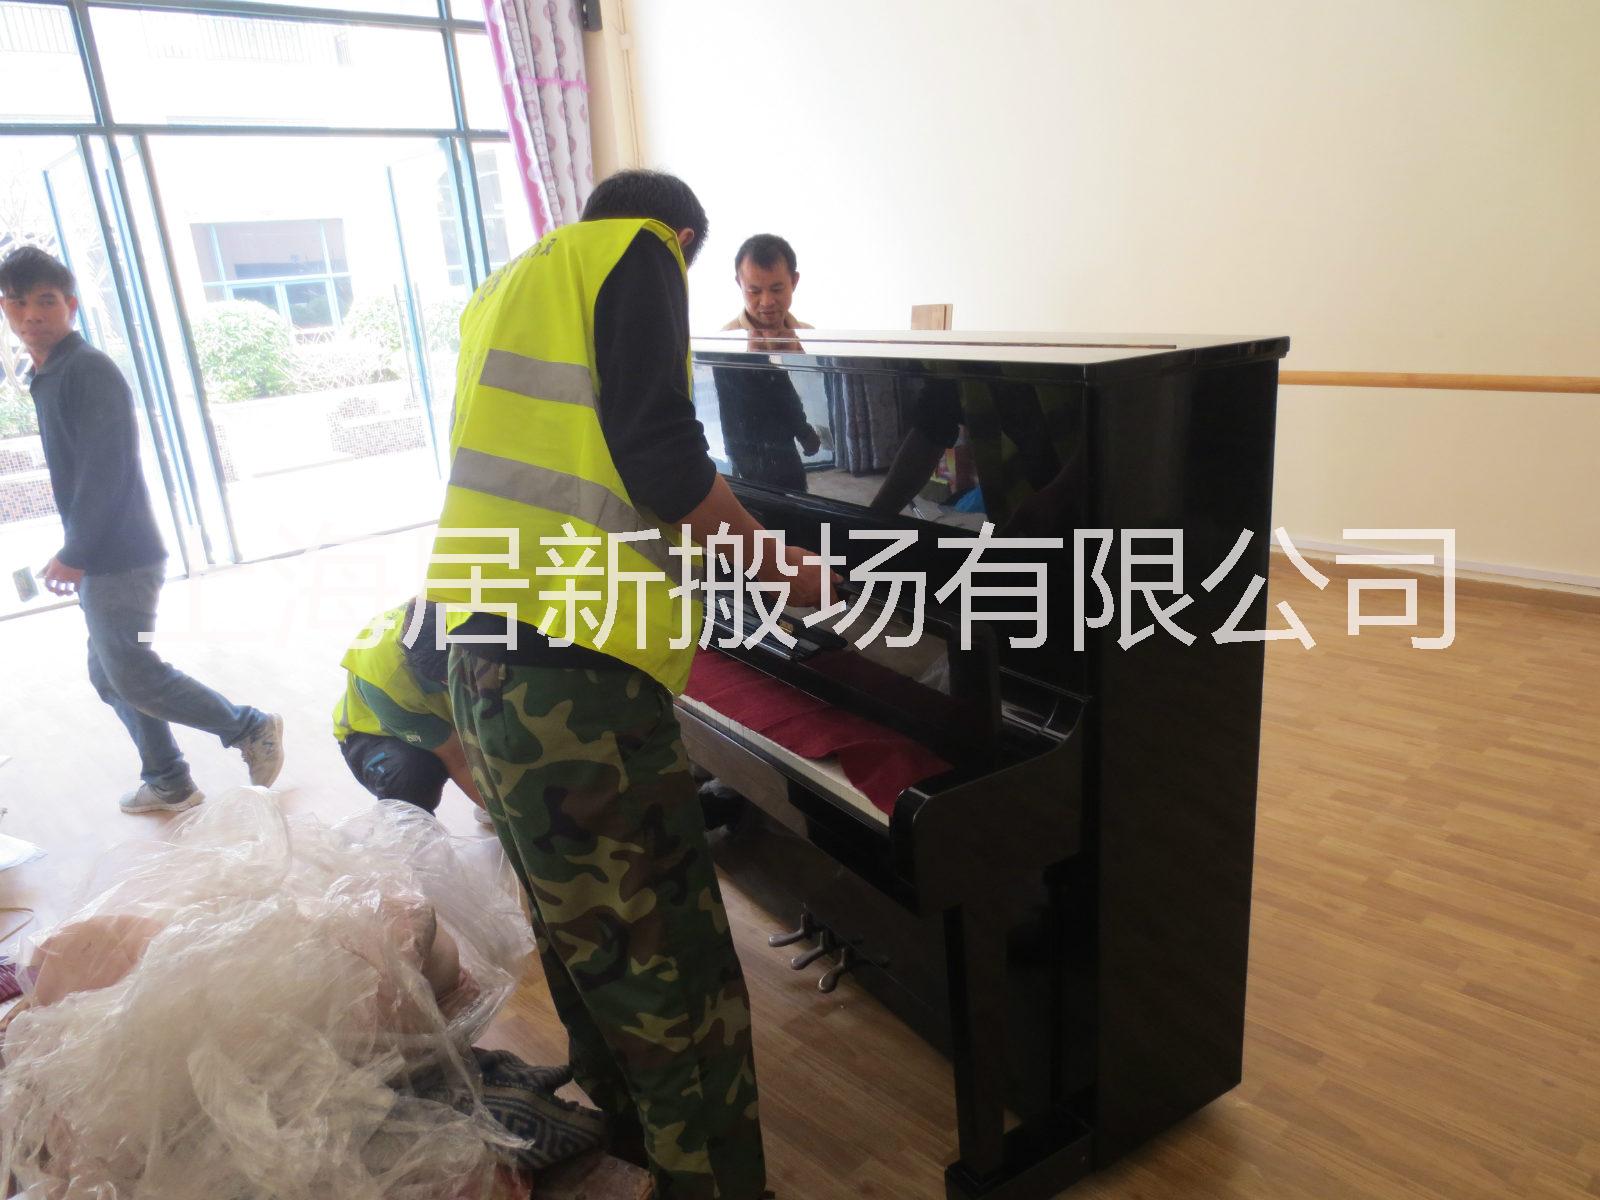 上海钢琴搬运价格/钢琴搬运多少钱批发